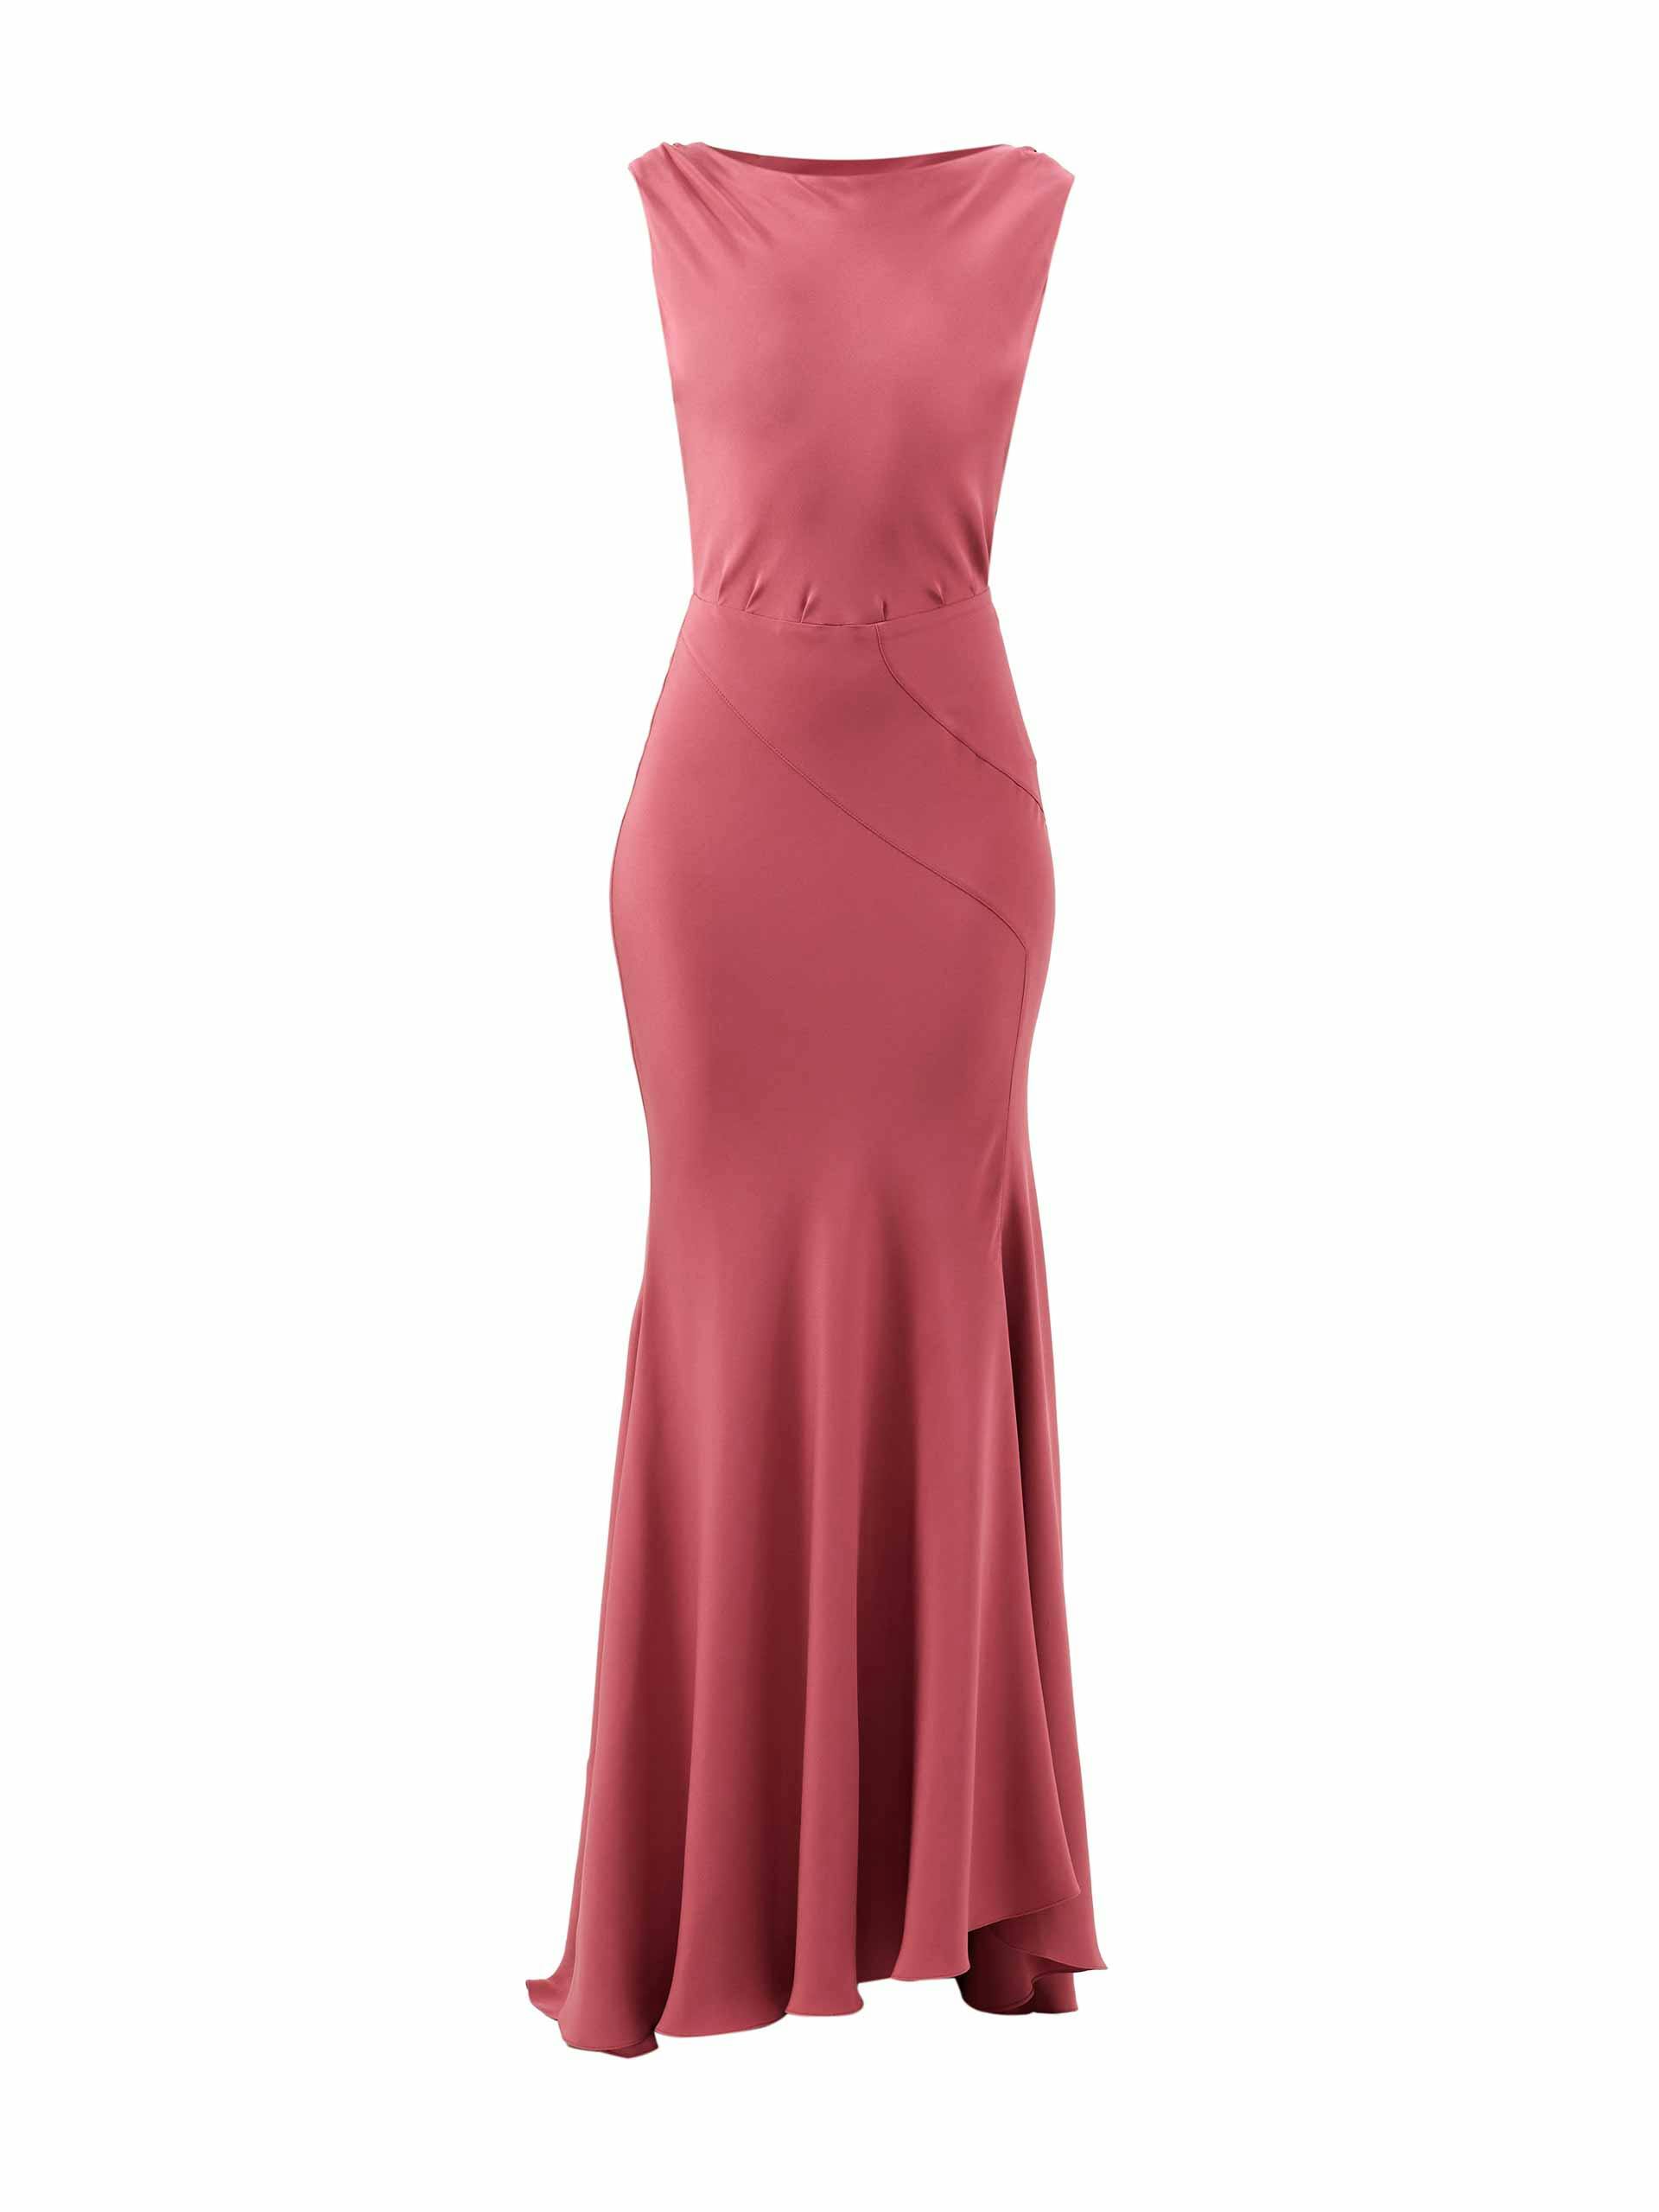 Pink satin maxi dress